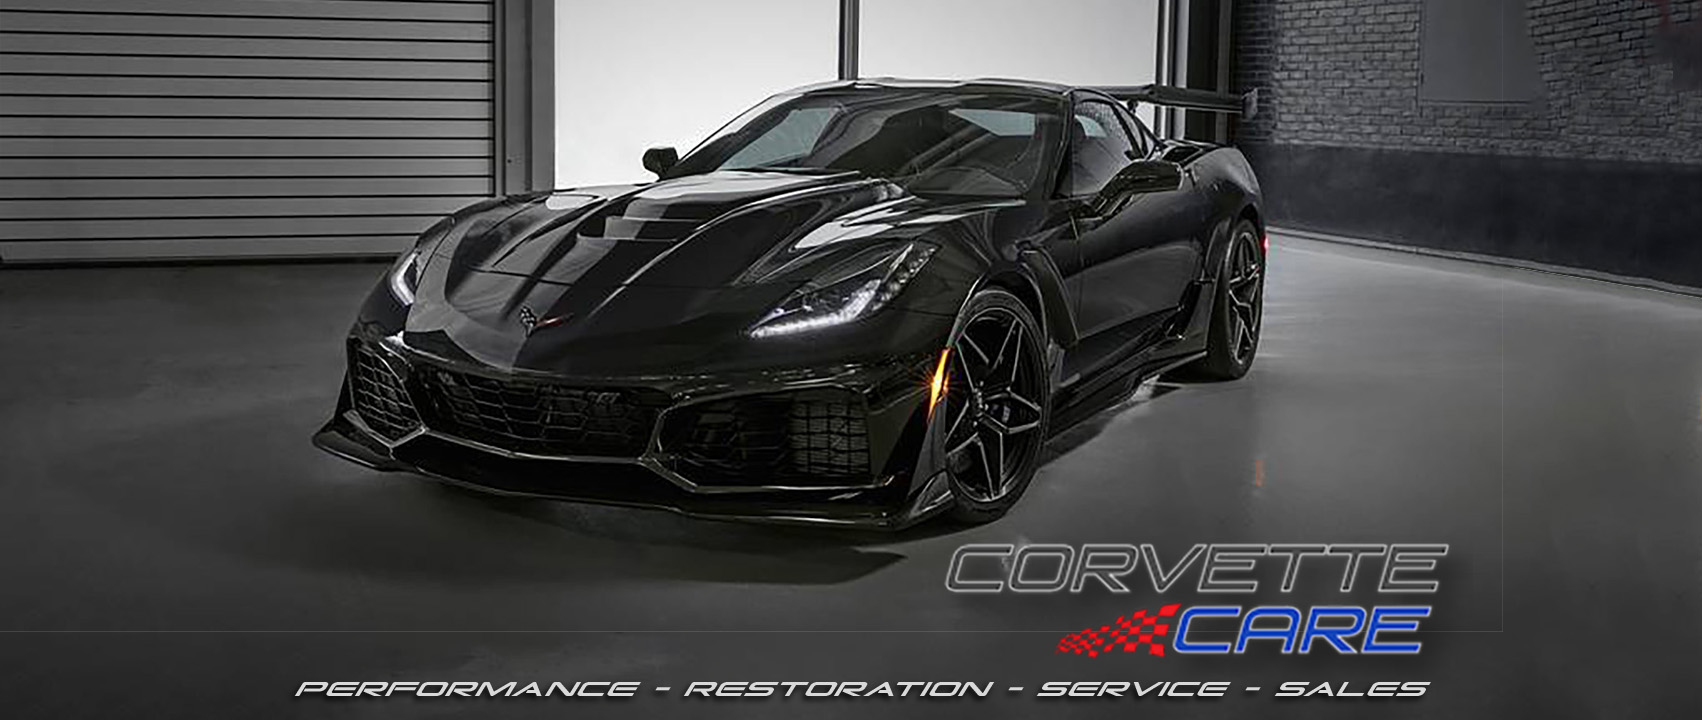 Corvette Care